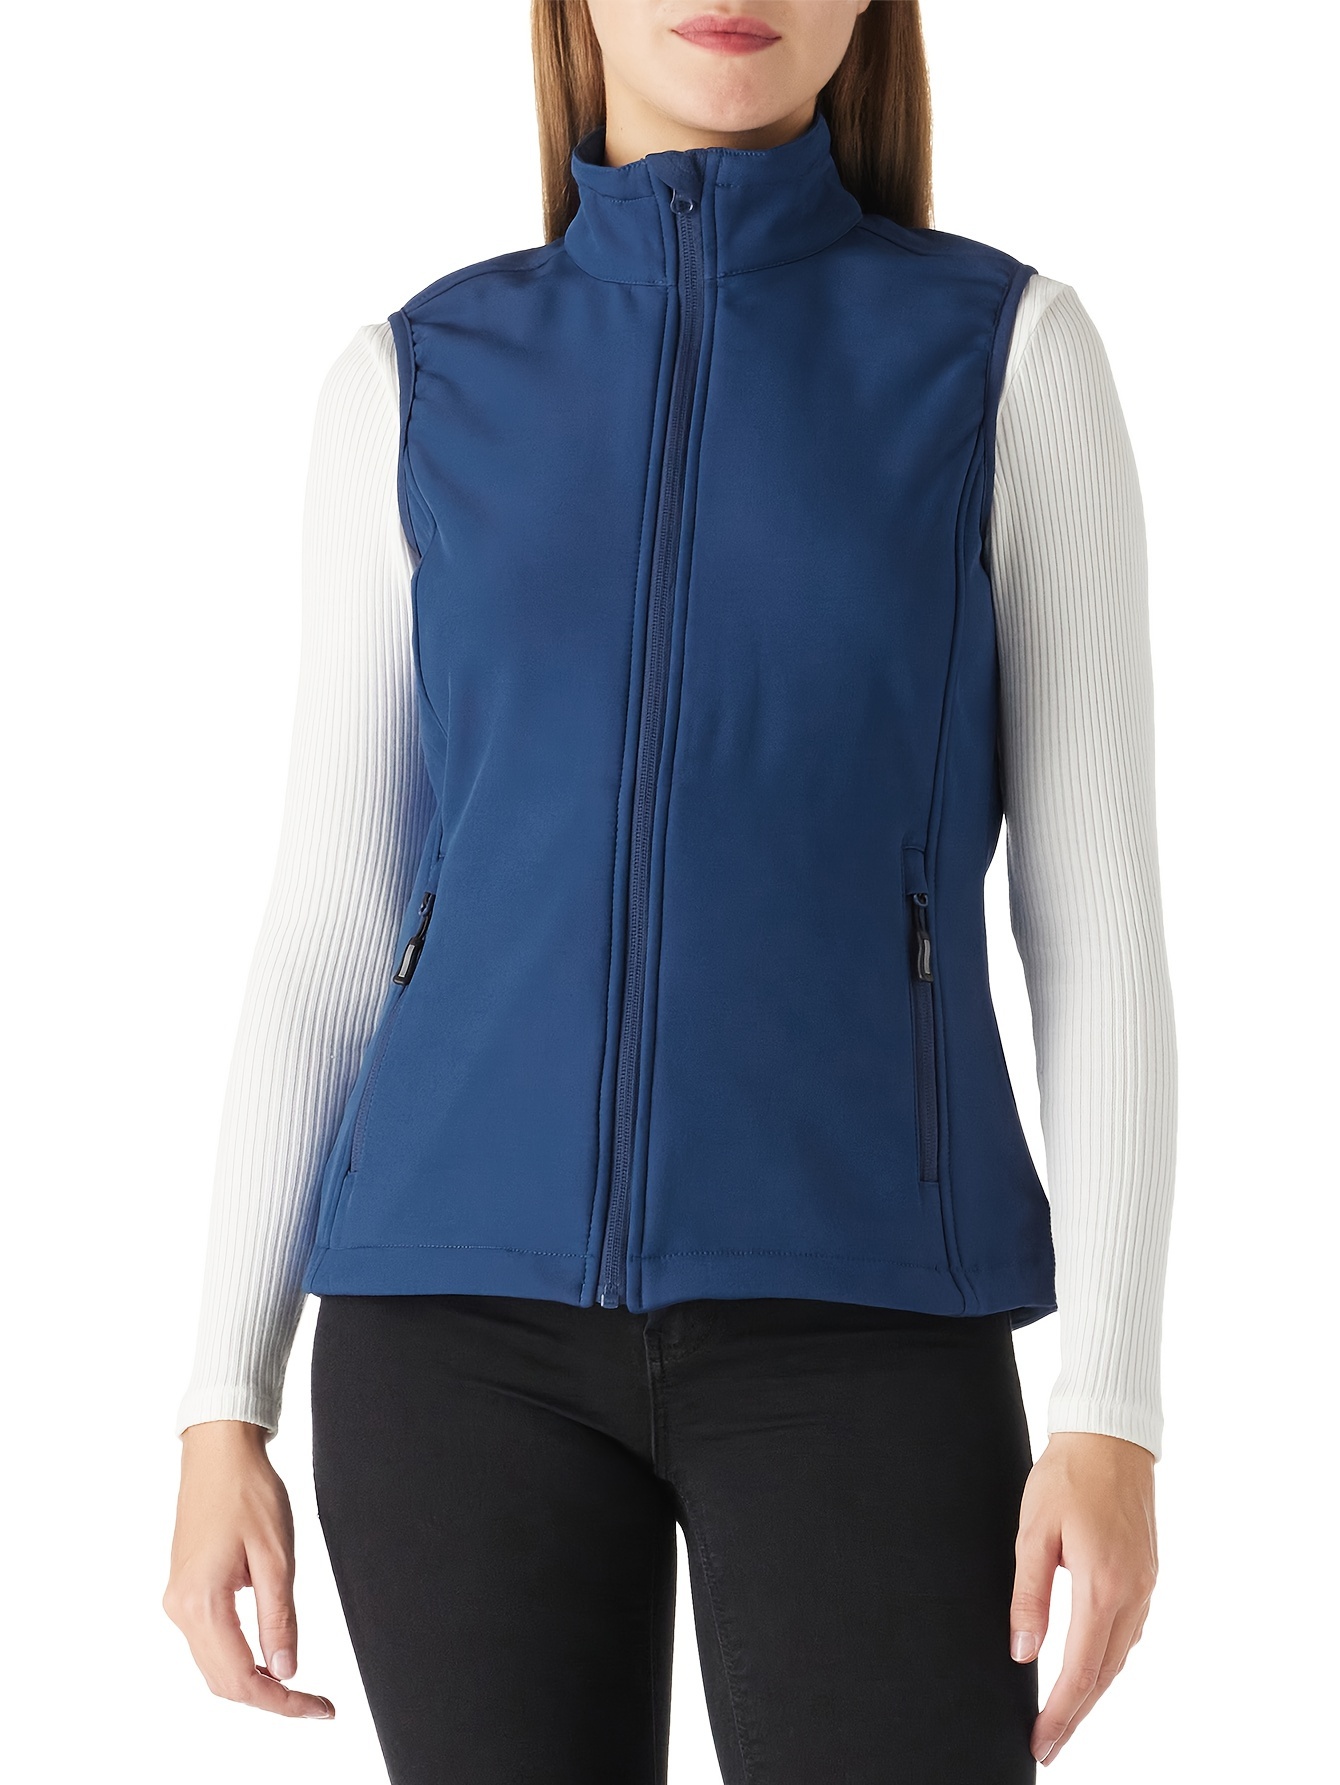 Zip Up Fleece Jackets & Vests for Women